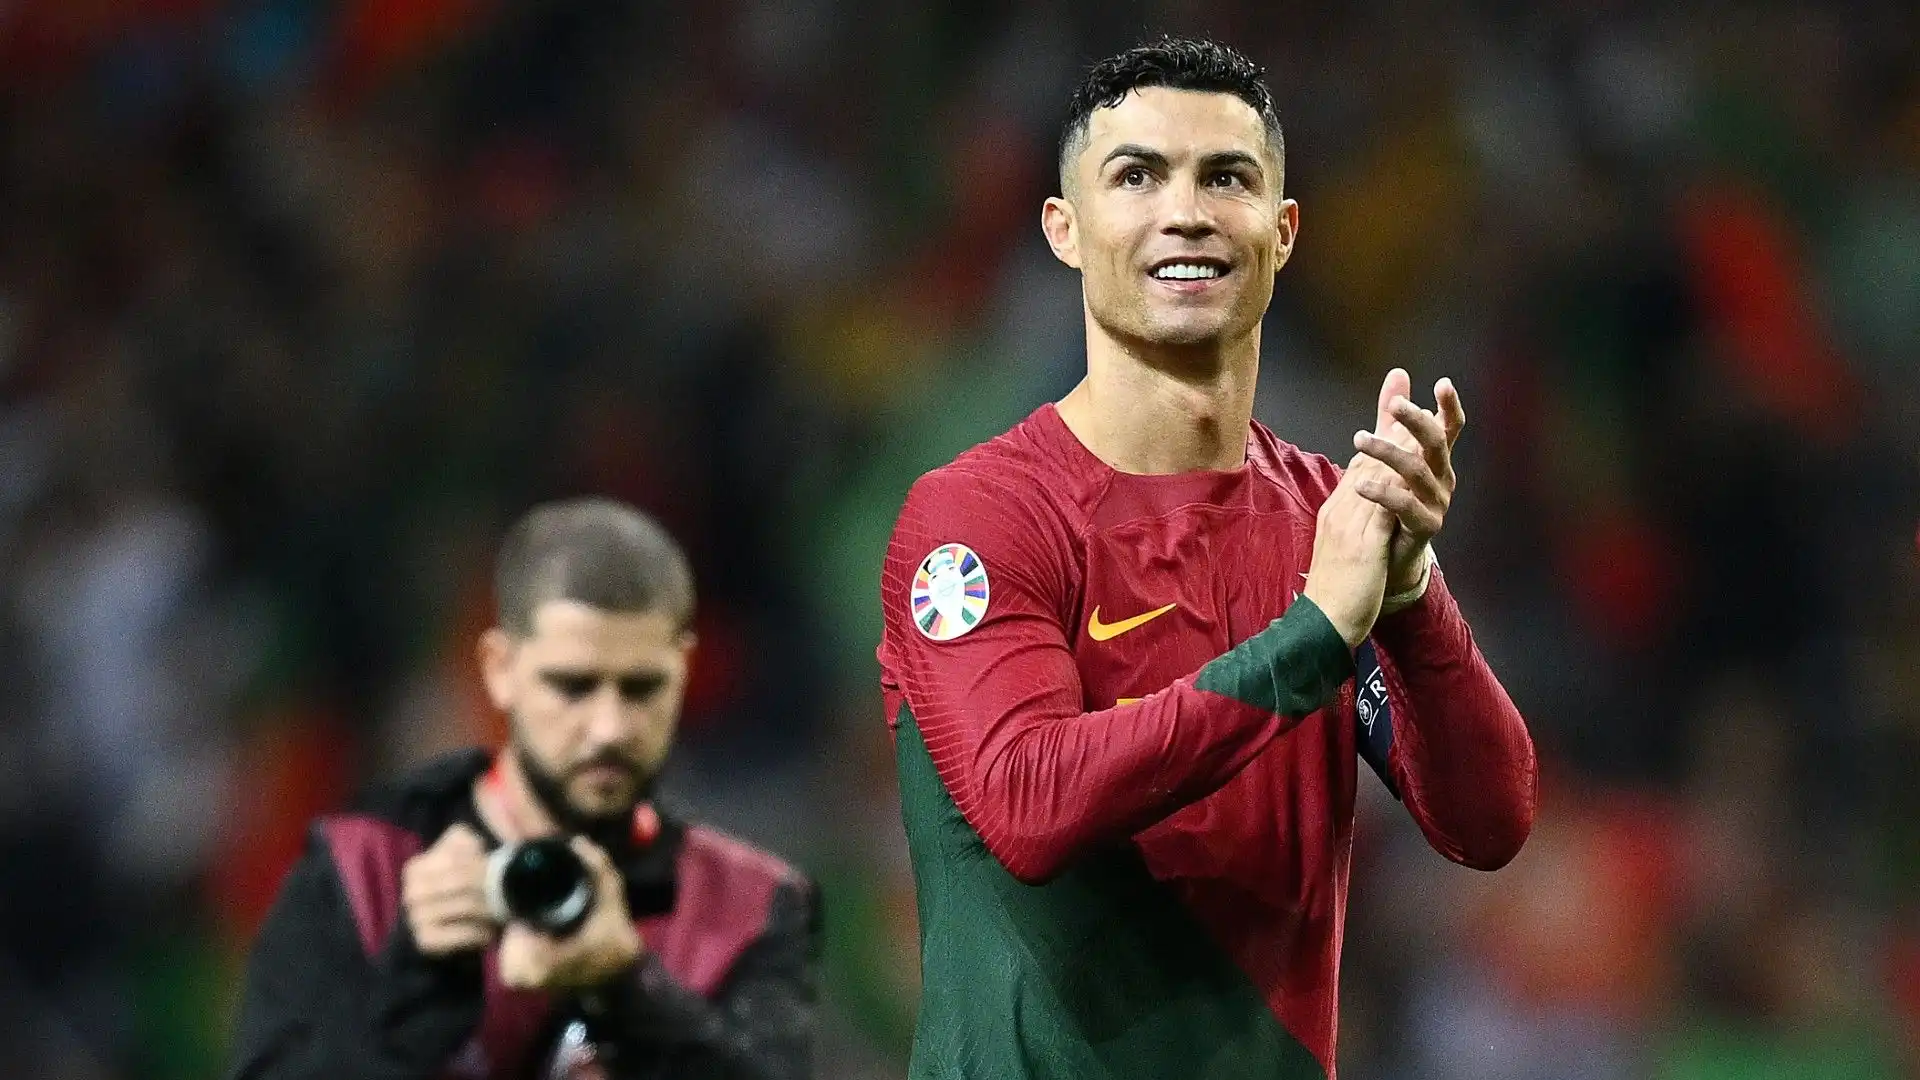 Cristiano Ronaldo finora ha disputato 203 partite con la nazionale portoghese, segnando 127 gol